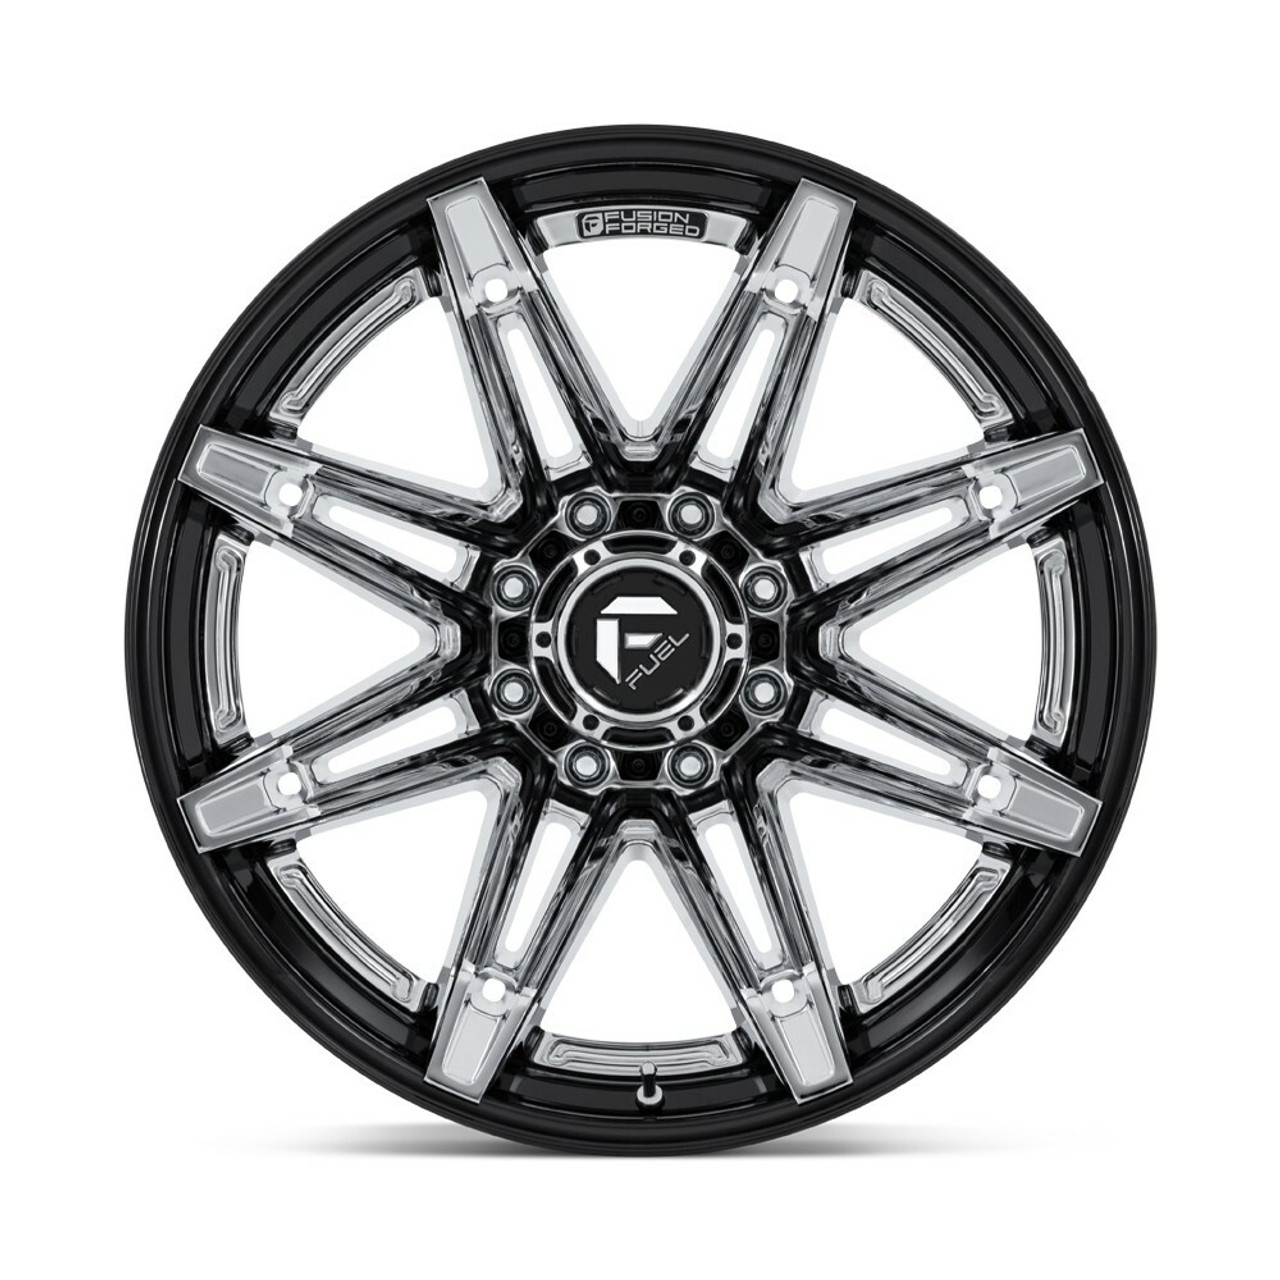 Fuel FC401 Brawl 20x10 6x135 Chrome Gloss Black Lip 20" -18mm Lifted Truck Wheel